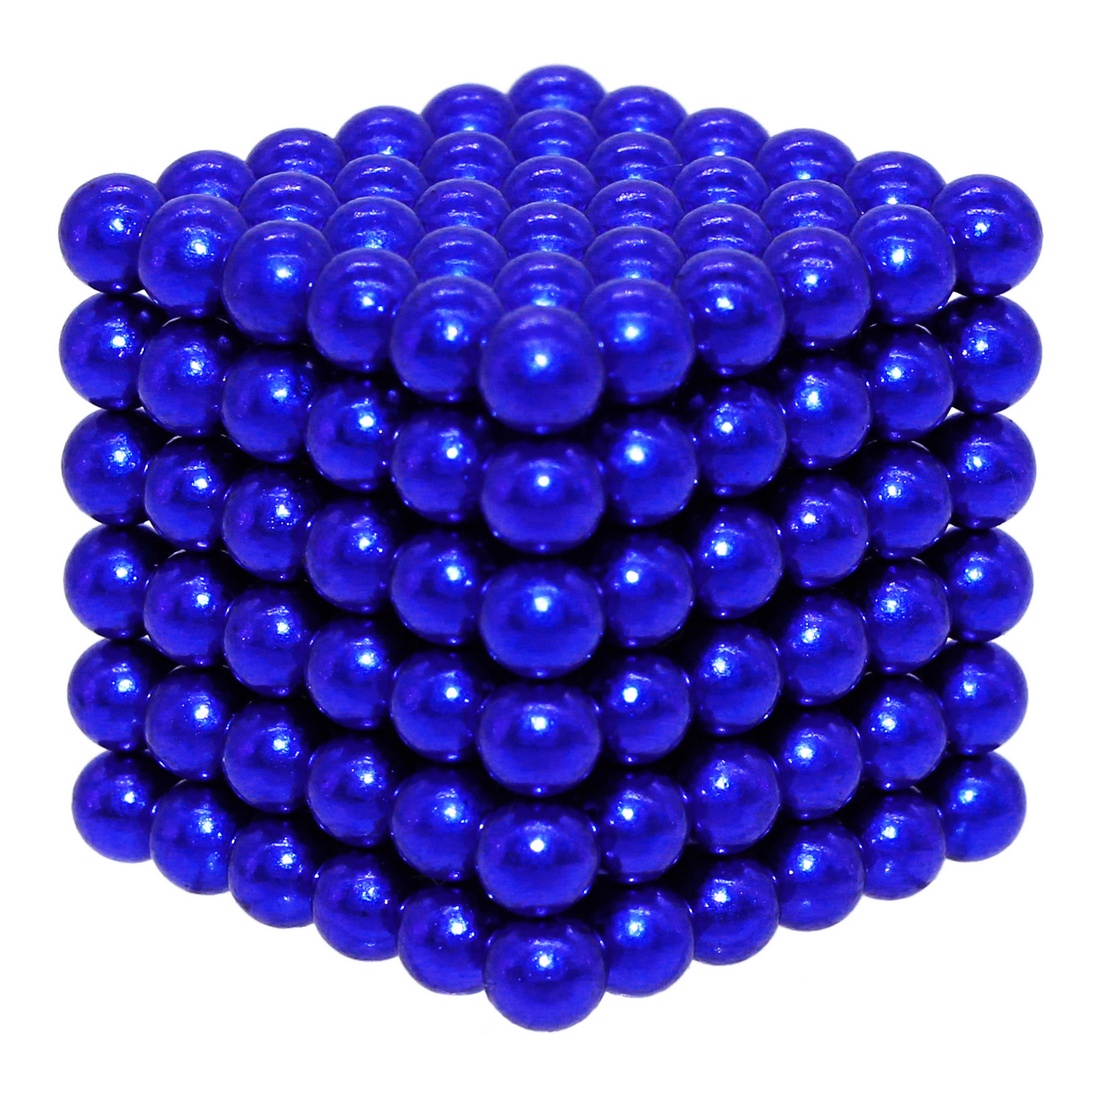 Головоломка магнитная Magnetic Cube, синий, 216 шариков, 5 мм